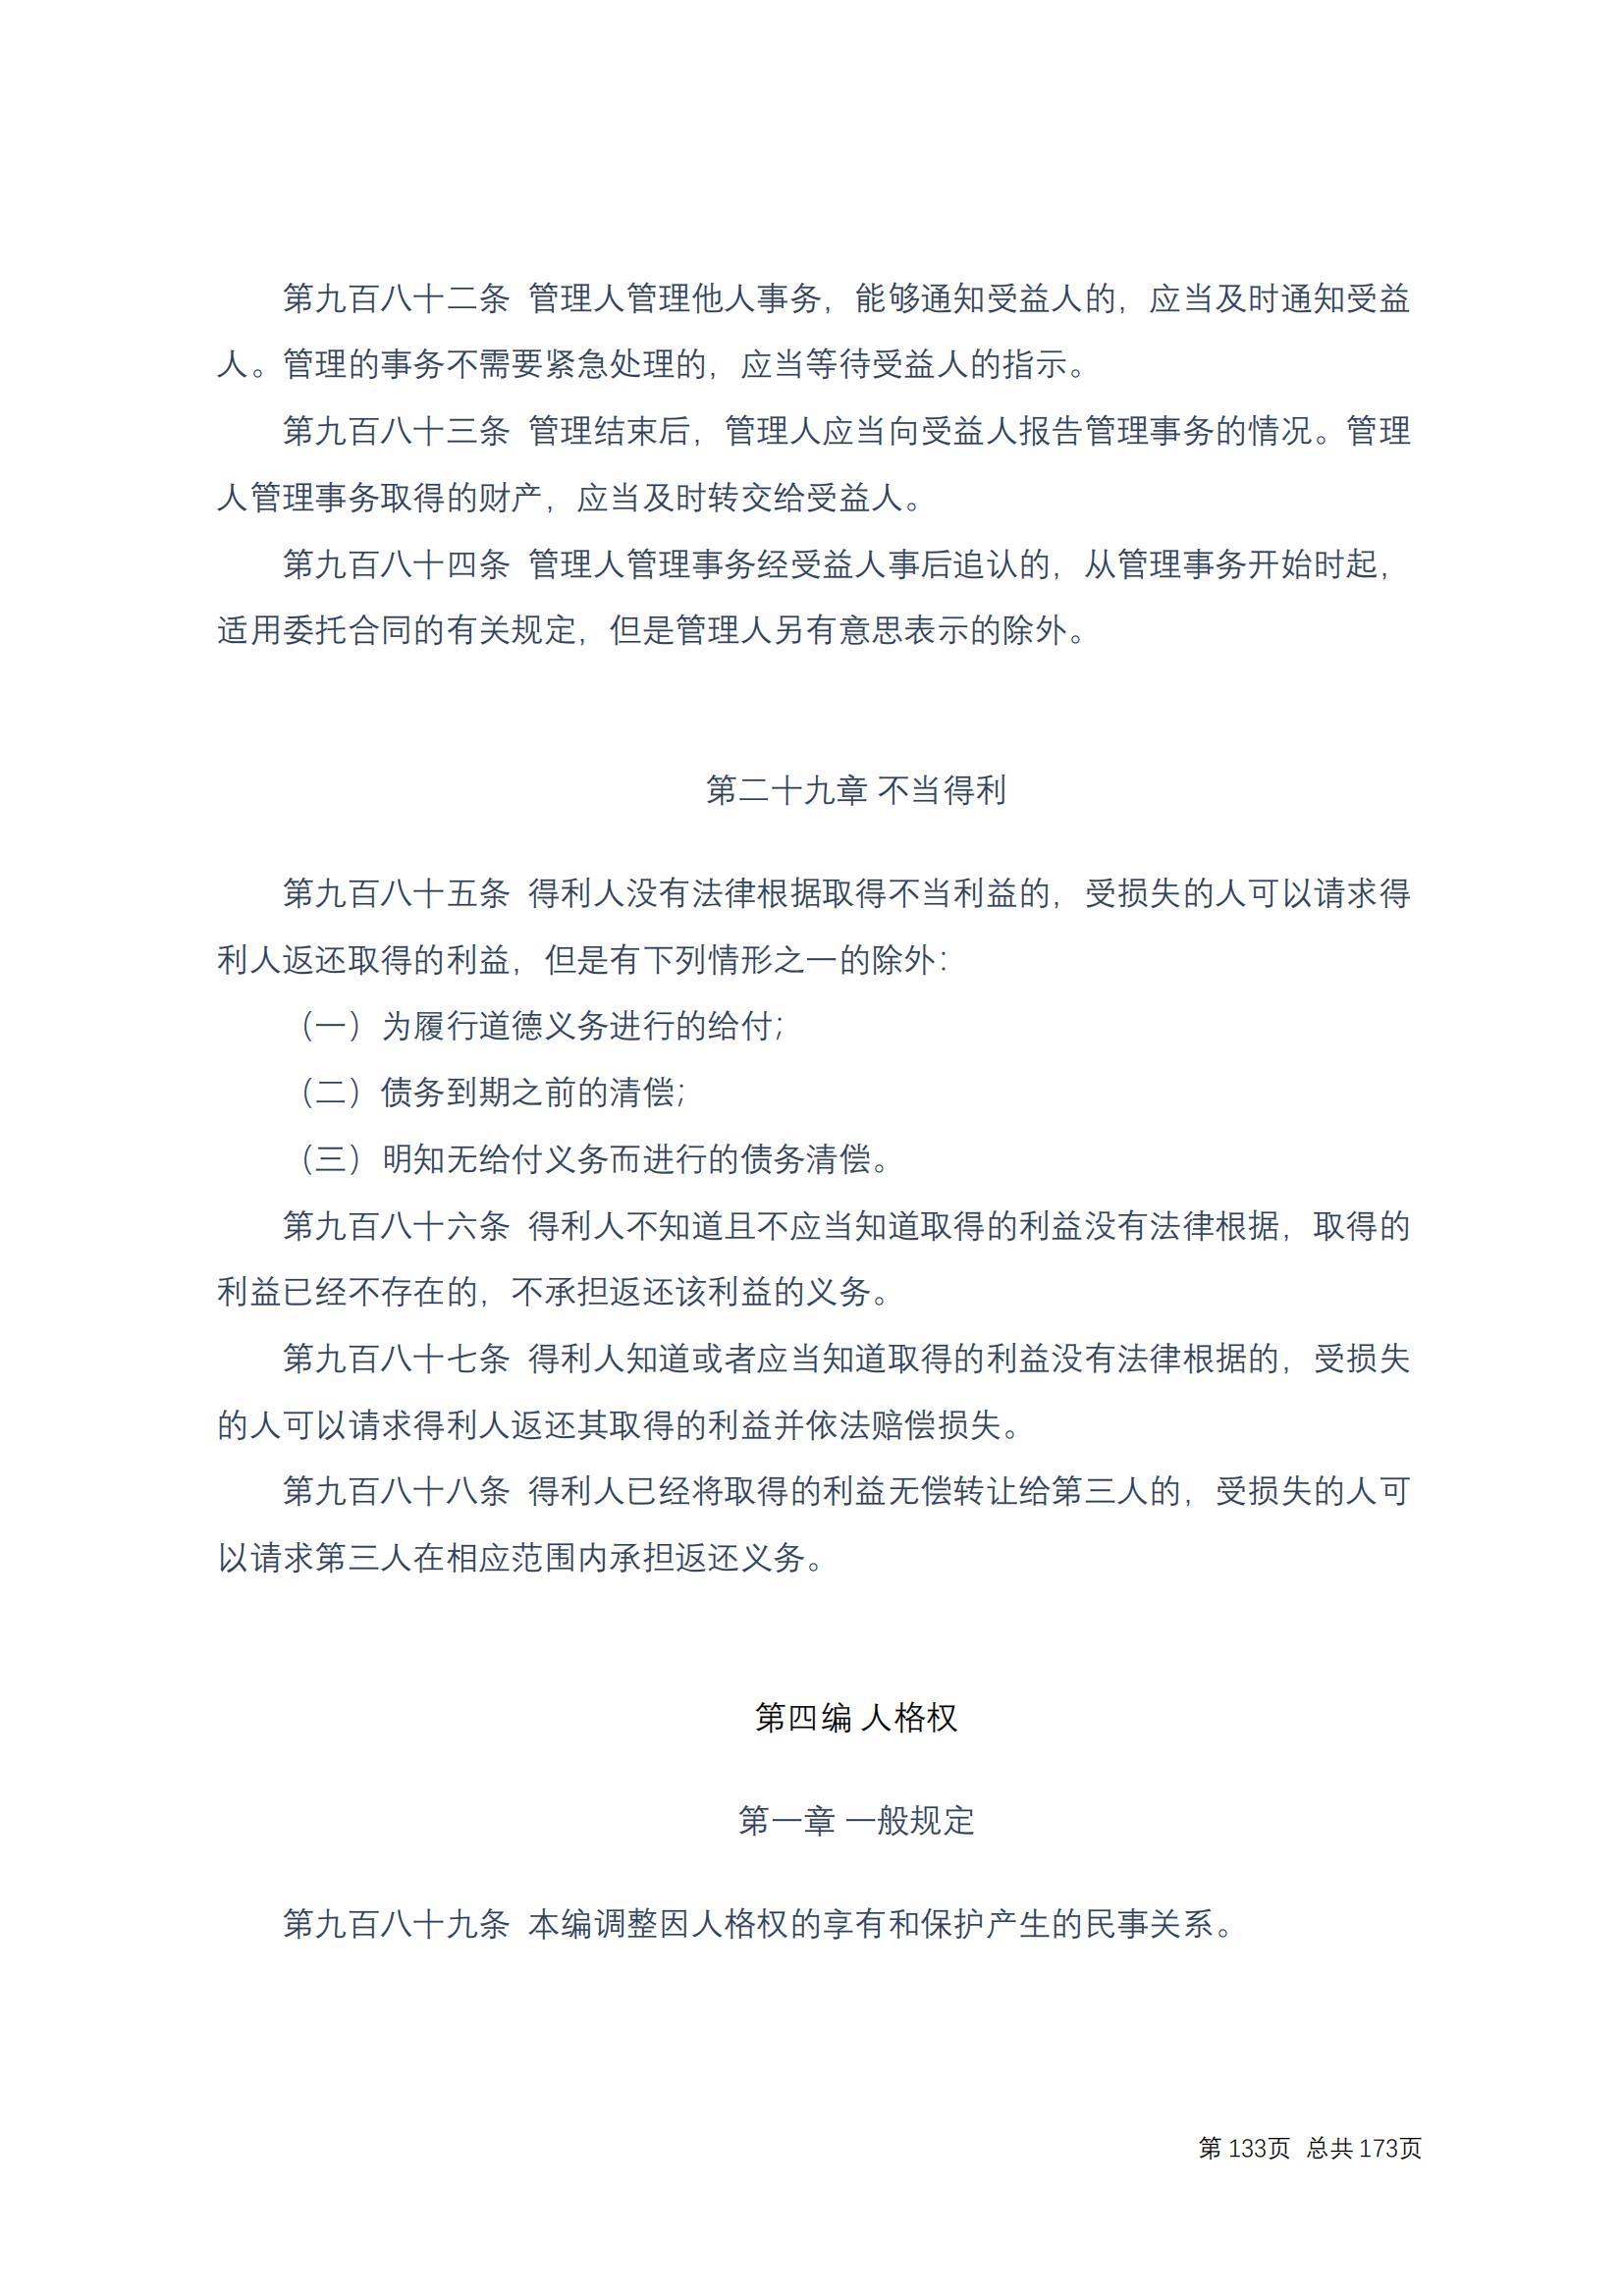 中华人民共和国民法典 修改过_132